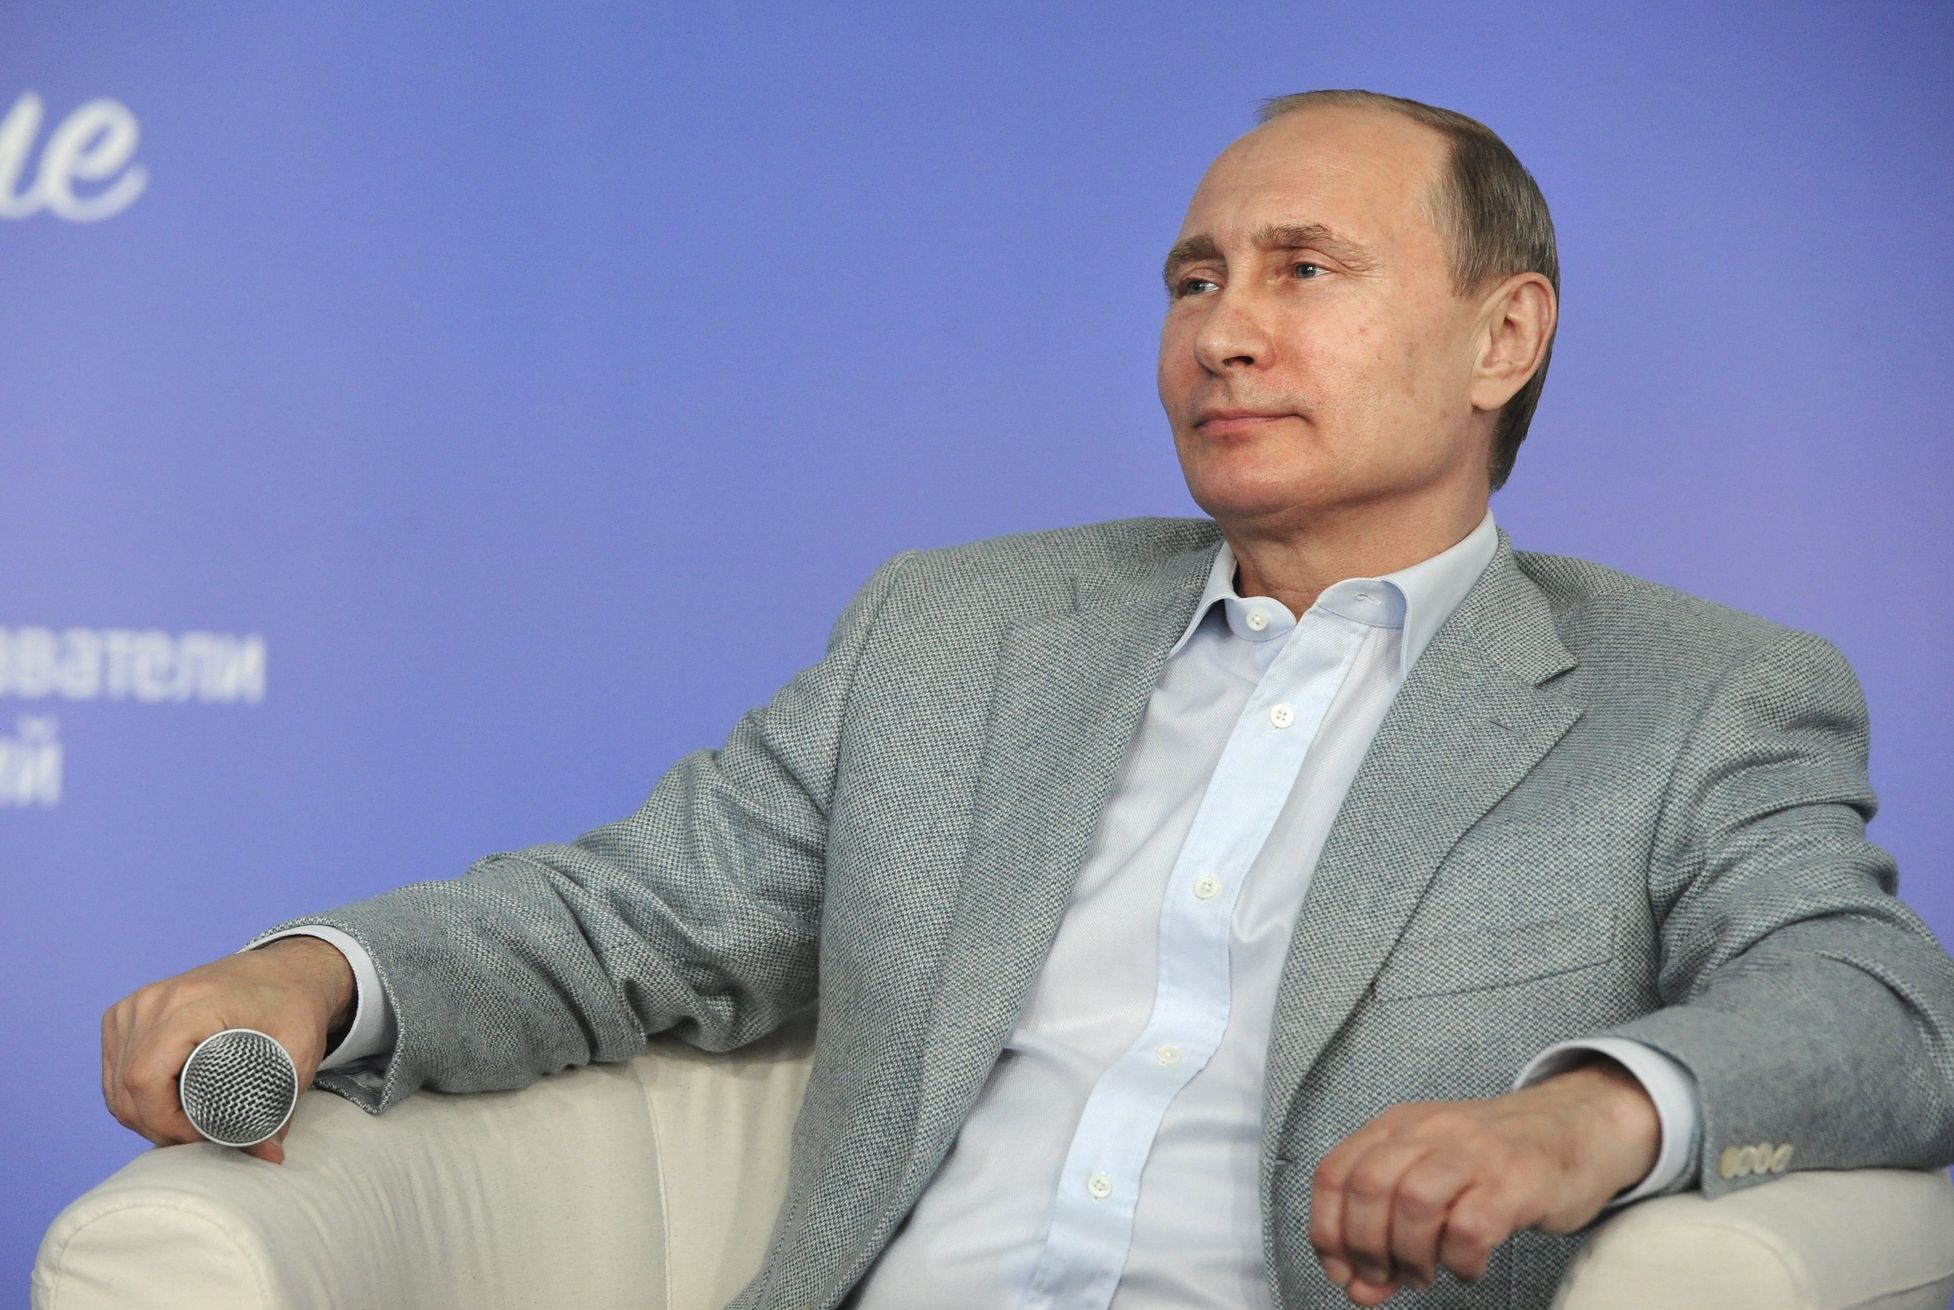 Vladimir Putin v "tsiprasovském stylu." Tedy  v košili a saku, ale bez kravaty.